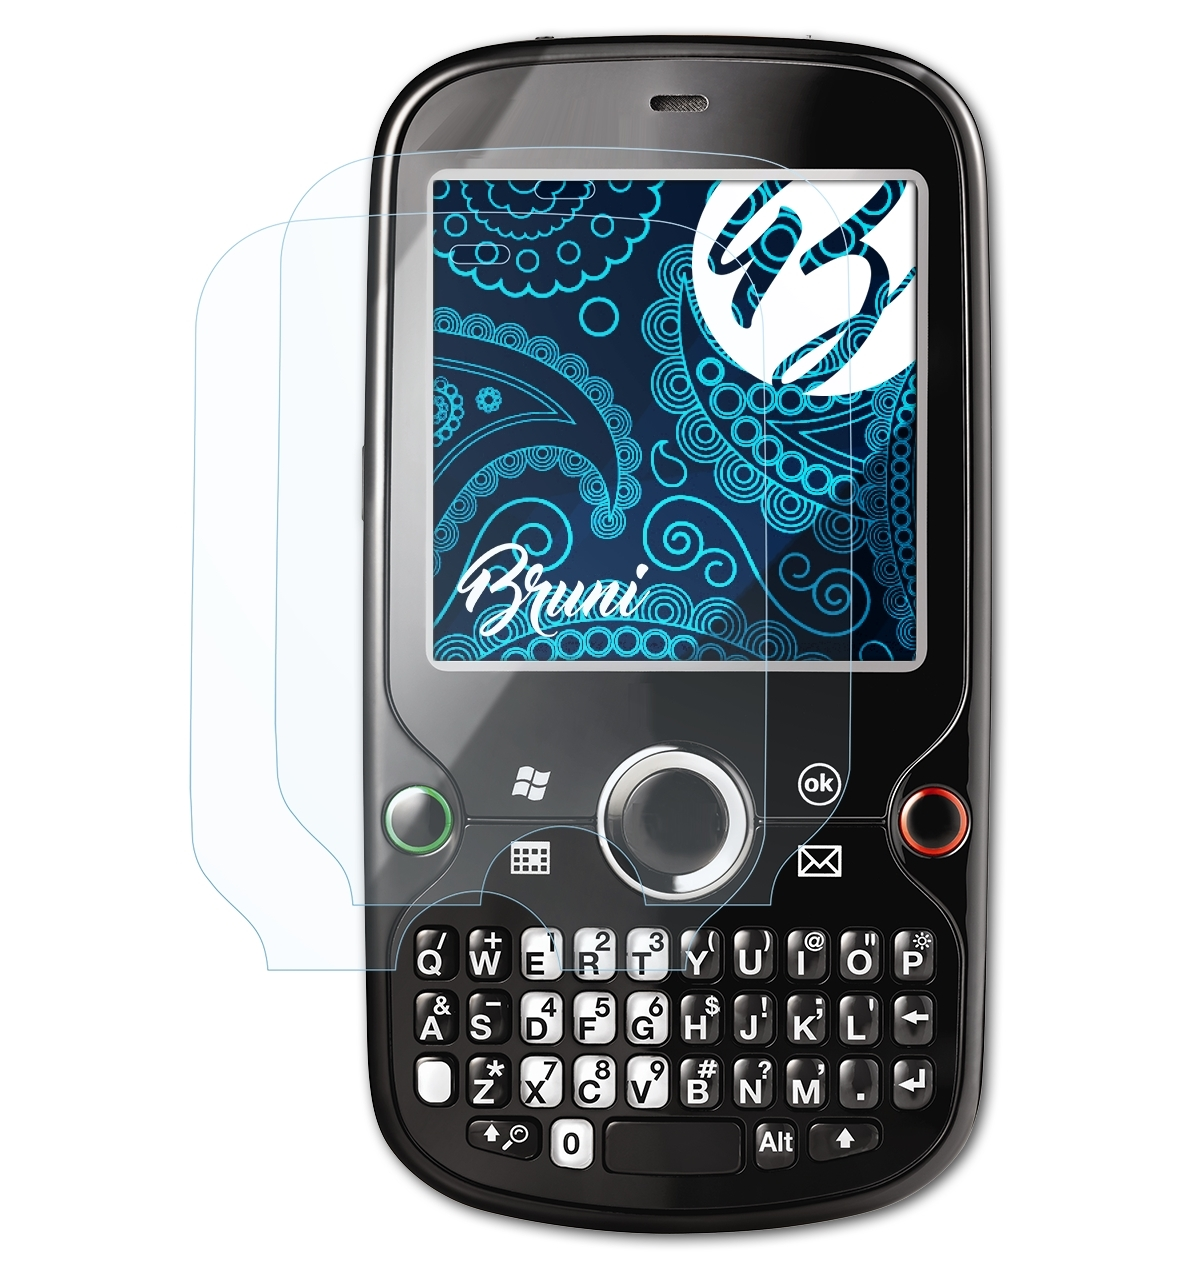 2x Basics-Clear Pro) Treo BRUNI Palm Schutzfolie(für